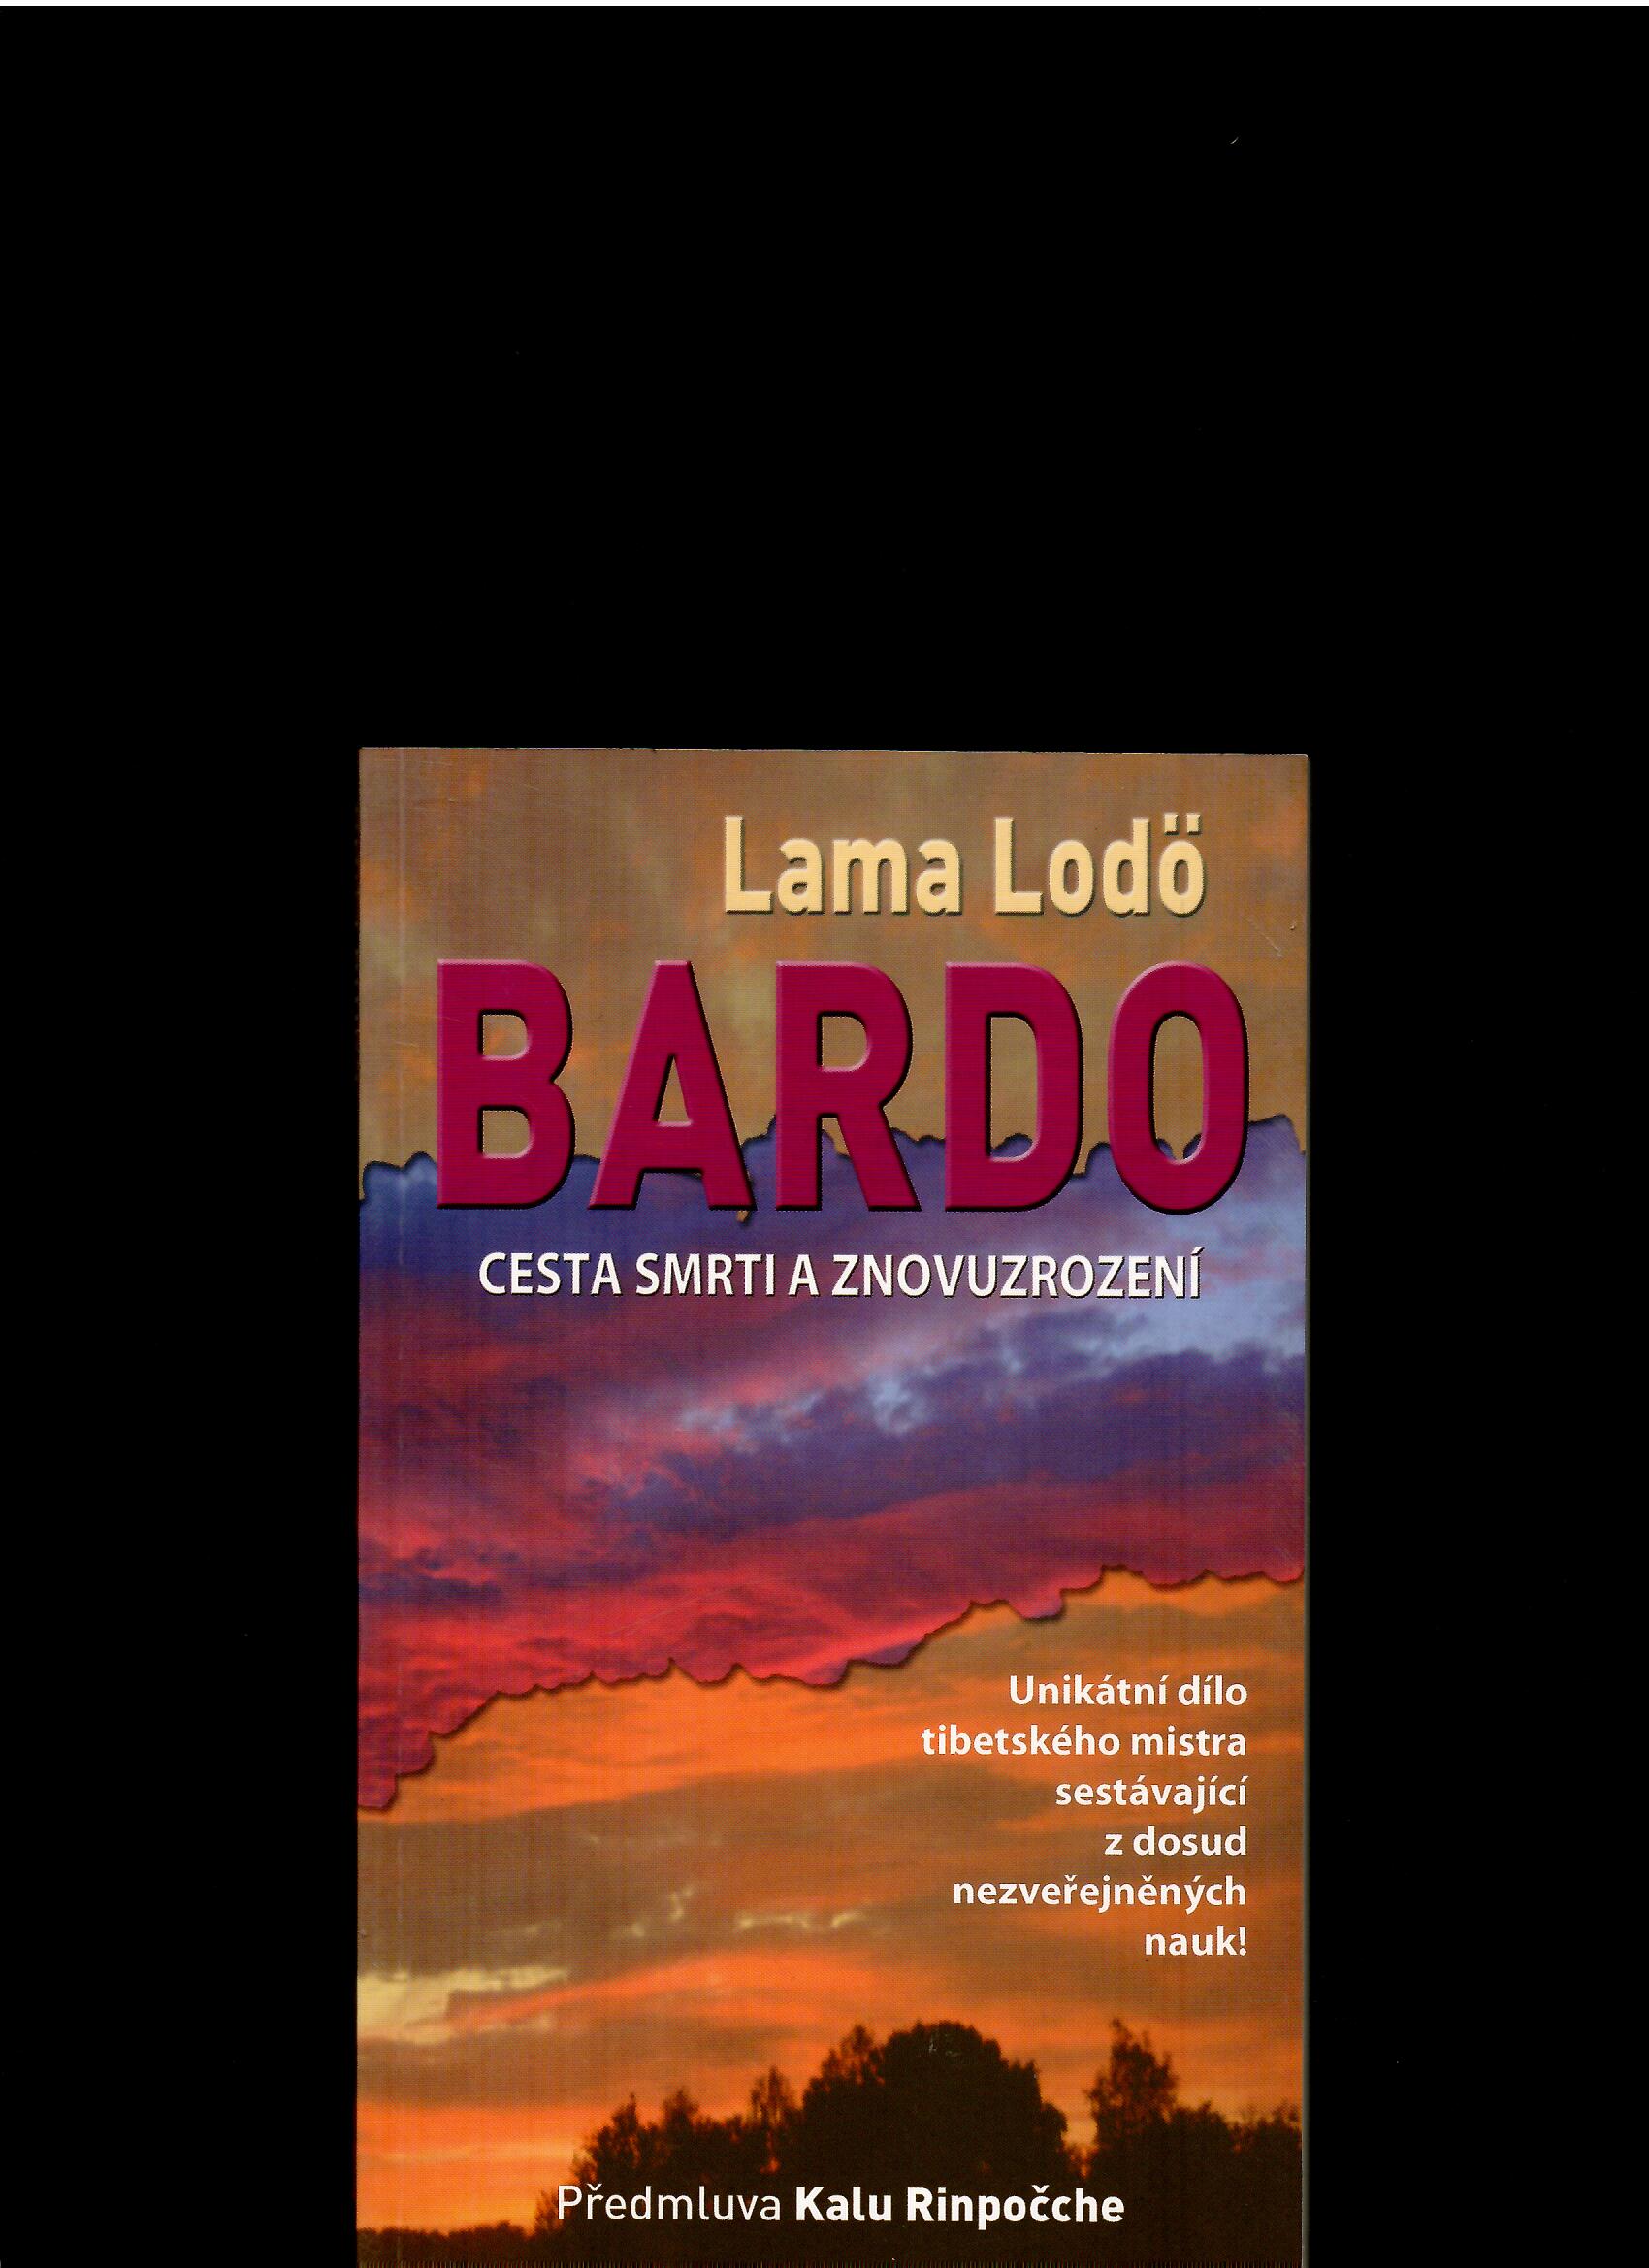 Lama Lodö: Bardo. Cesta smrti a znovuzrození